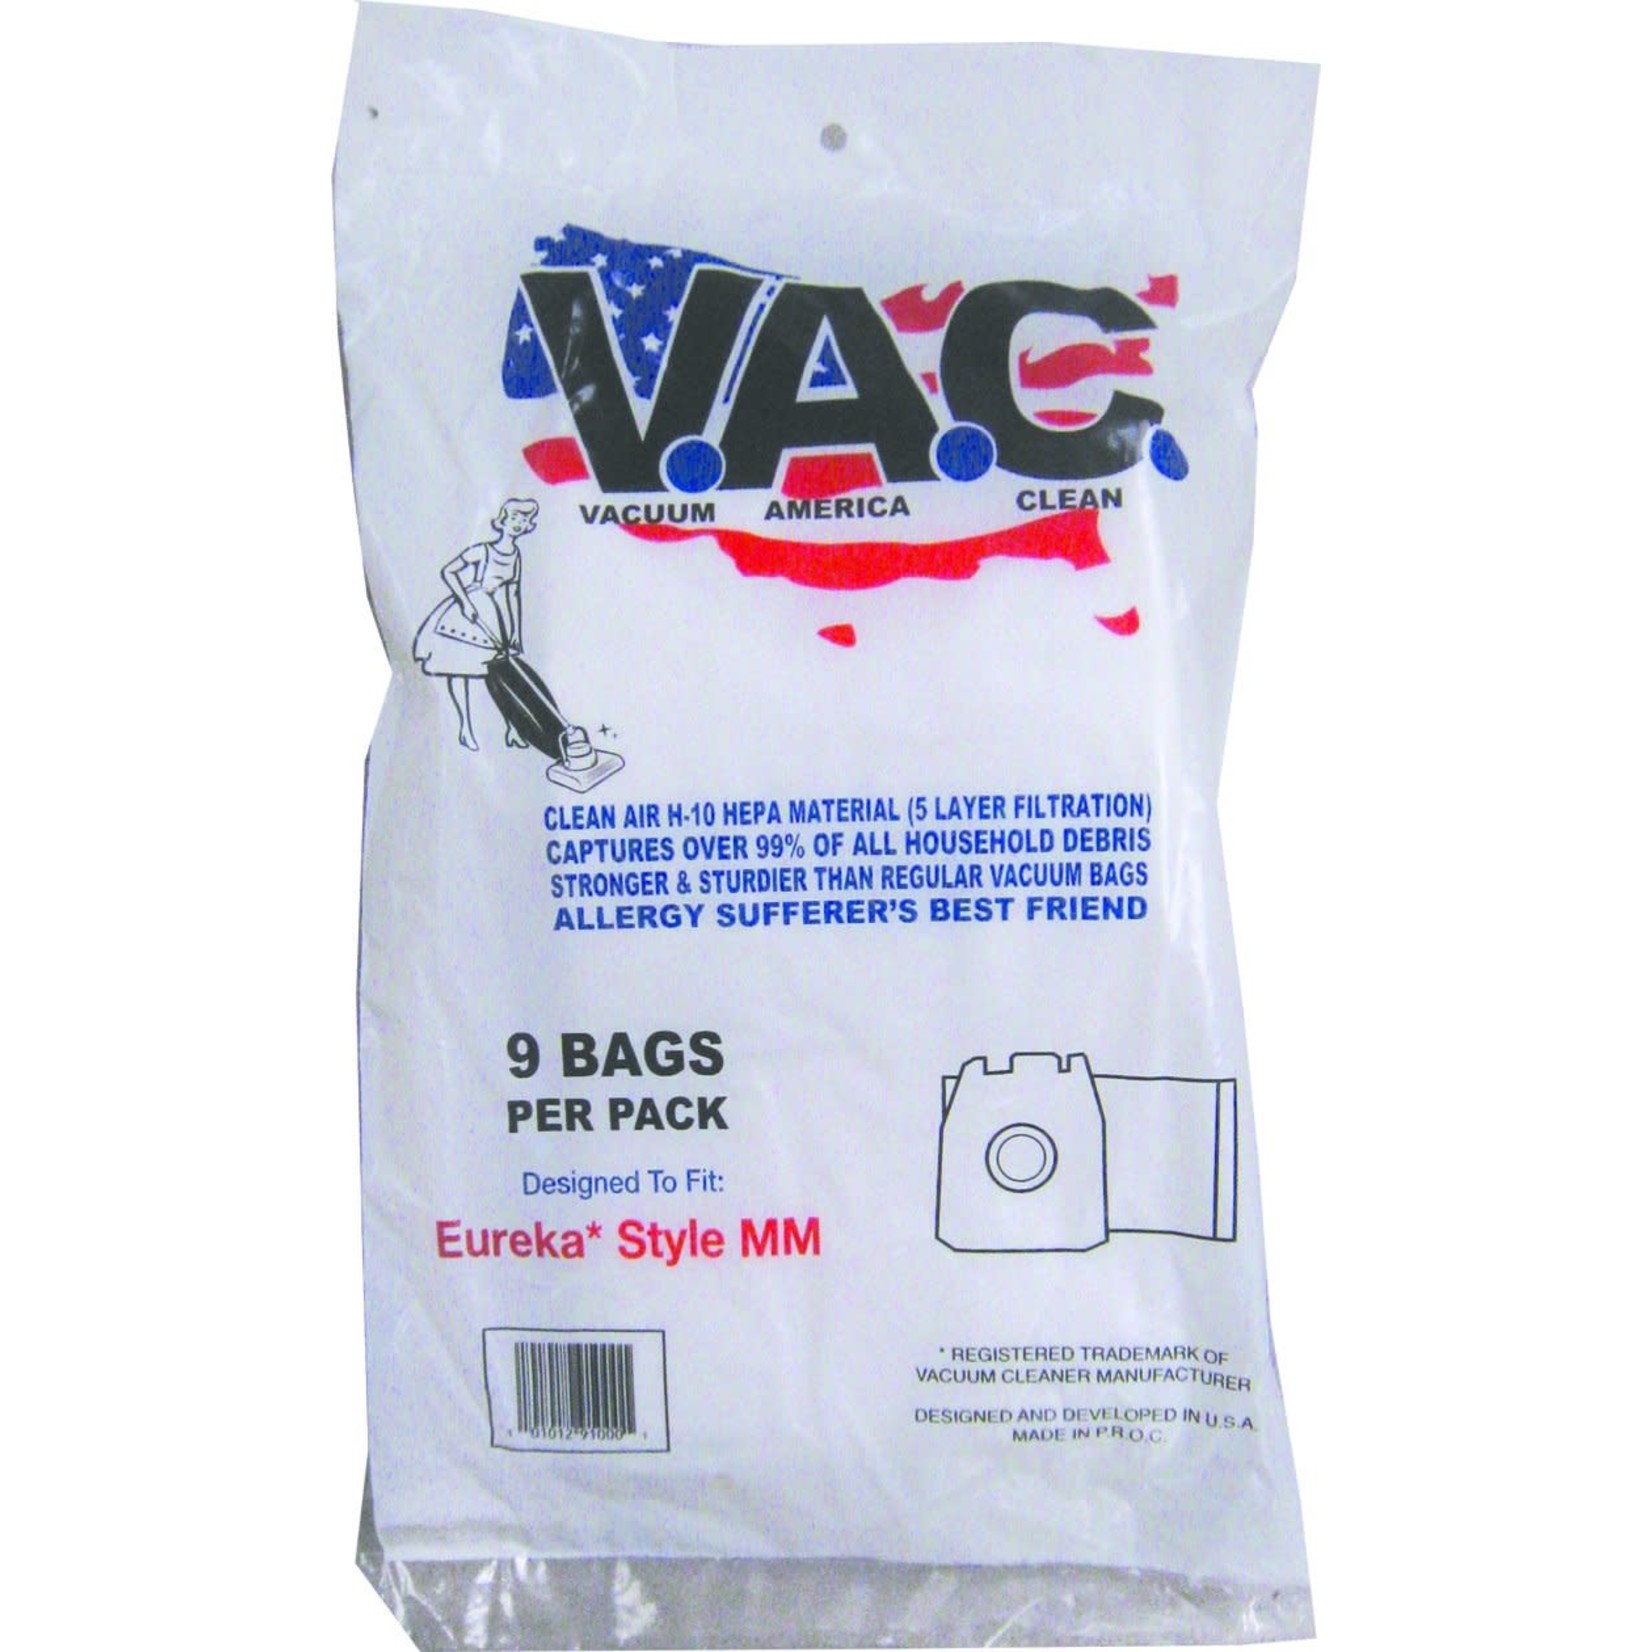 Vacuum America Clean VAC America Sanitaire Type MM HEPA Cloth Bag - 9pk